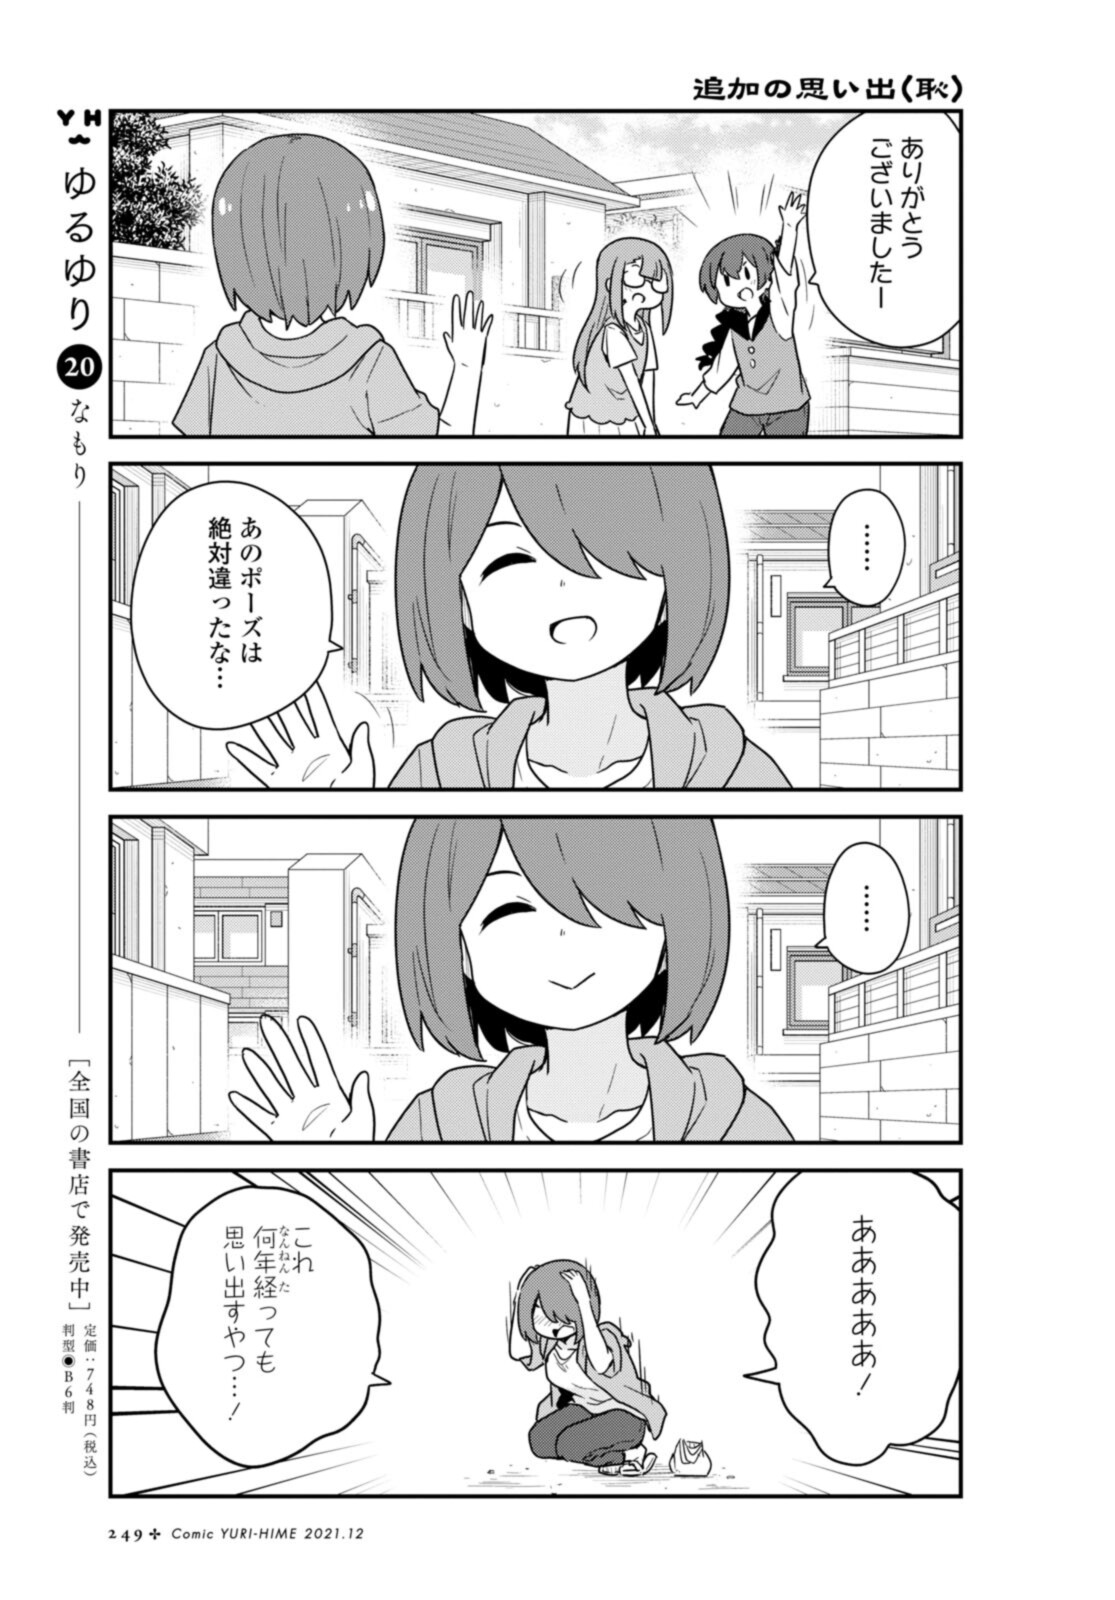 Watashi ni Tenshi ga Maiorita! - Chapter 89 - Page 11